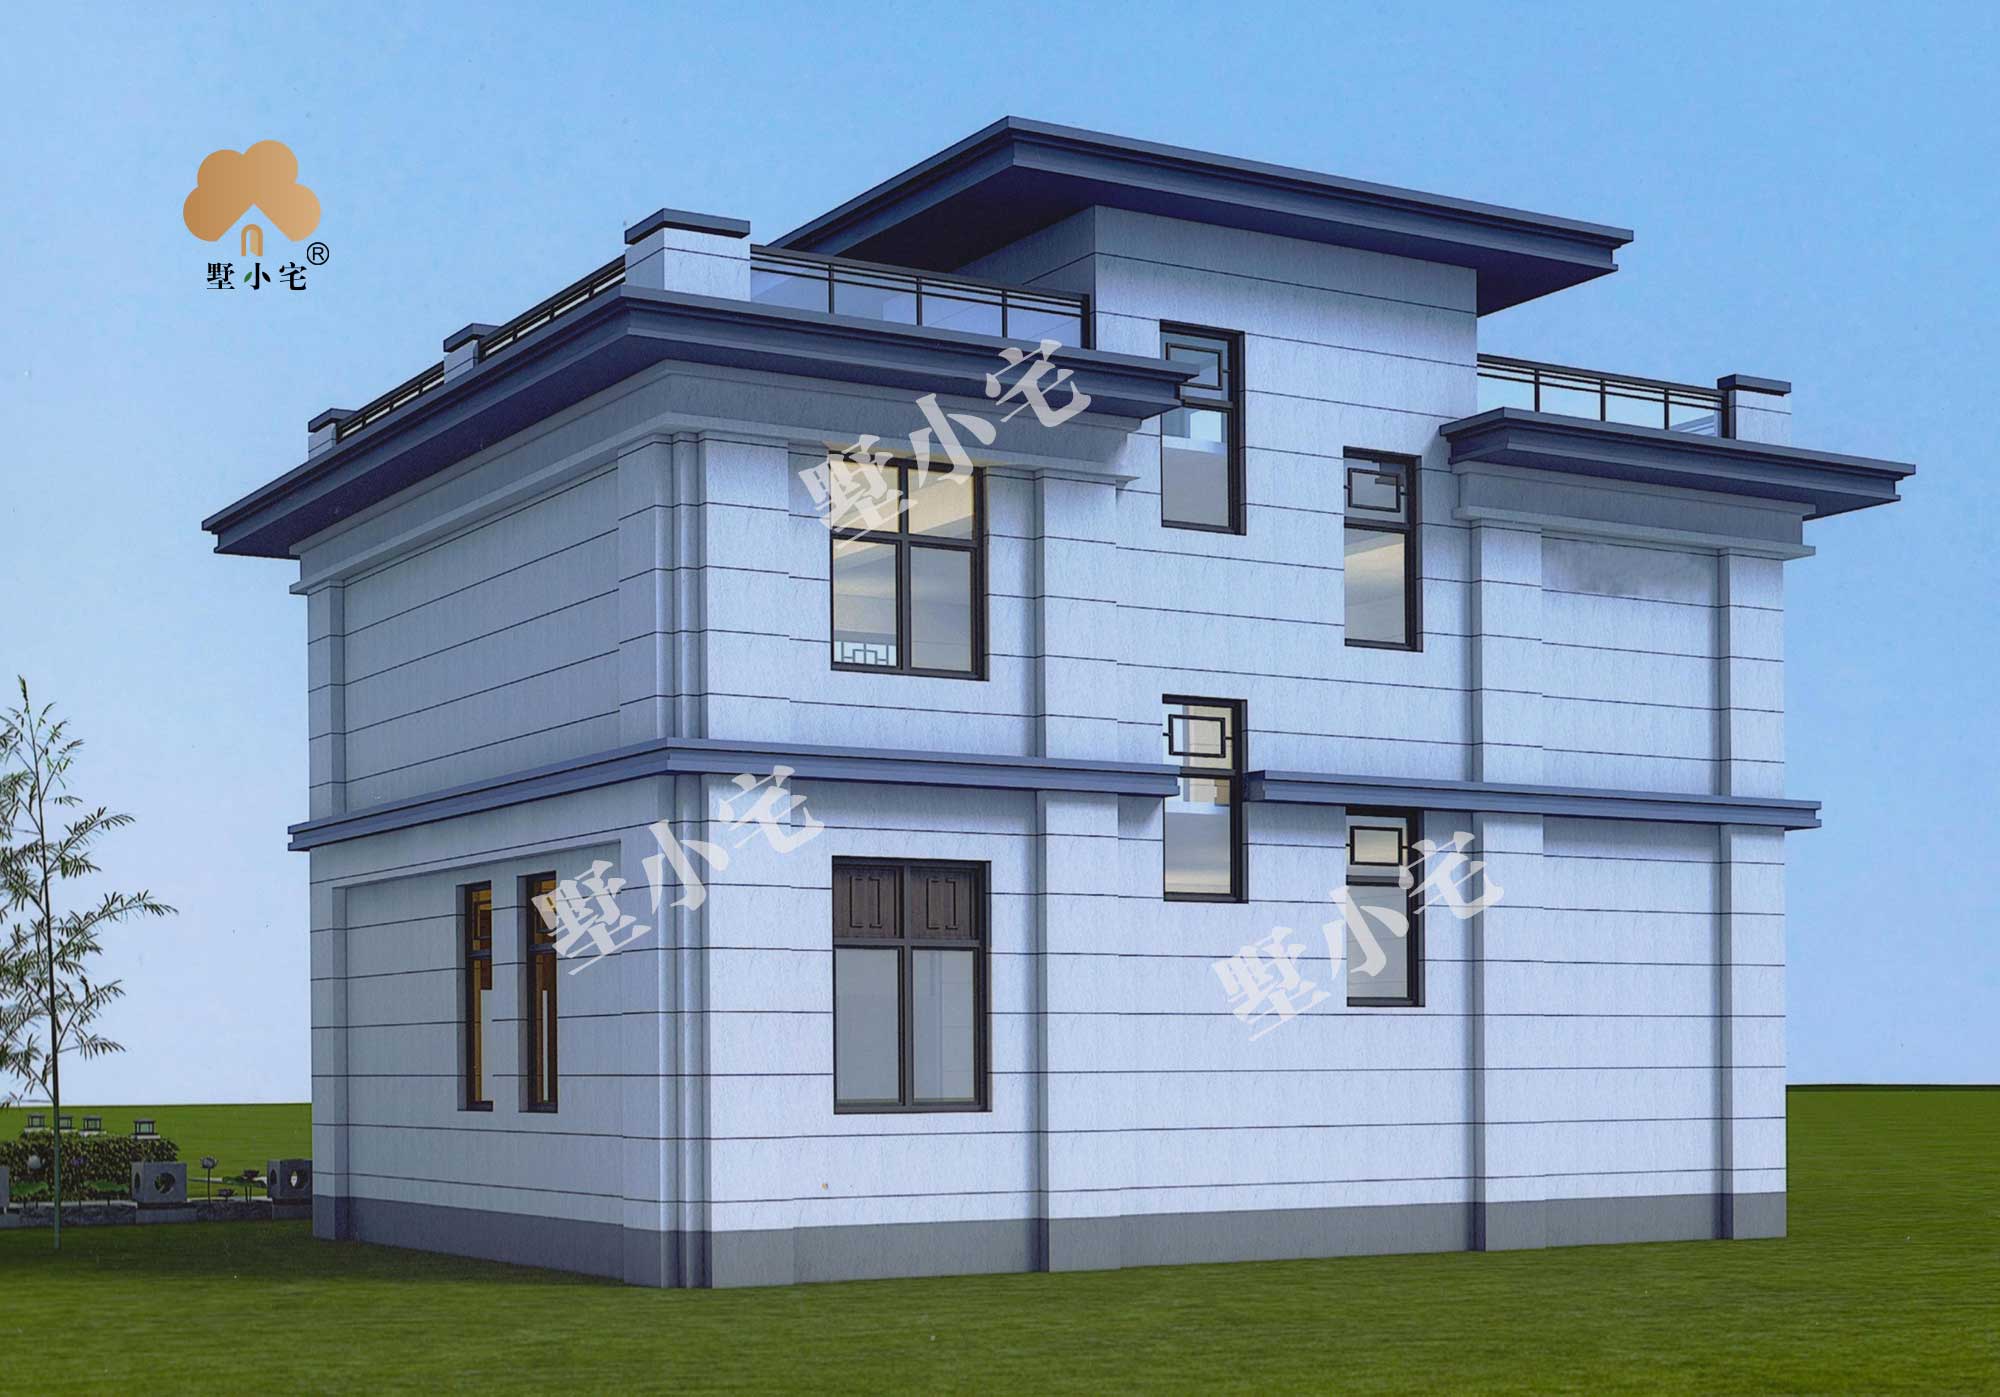 【新中式别墅小洋楼】B304-2二层农村新款别墅造型外观大全， 农村最漂亮的二层别墅